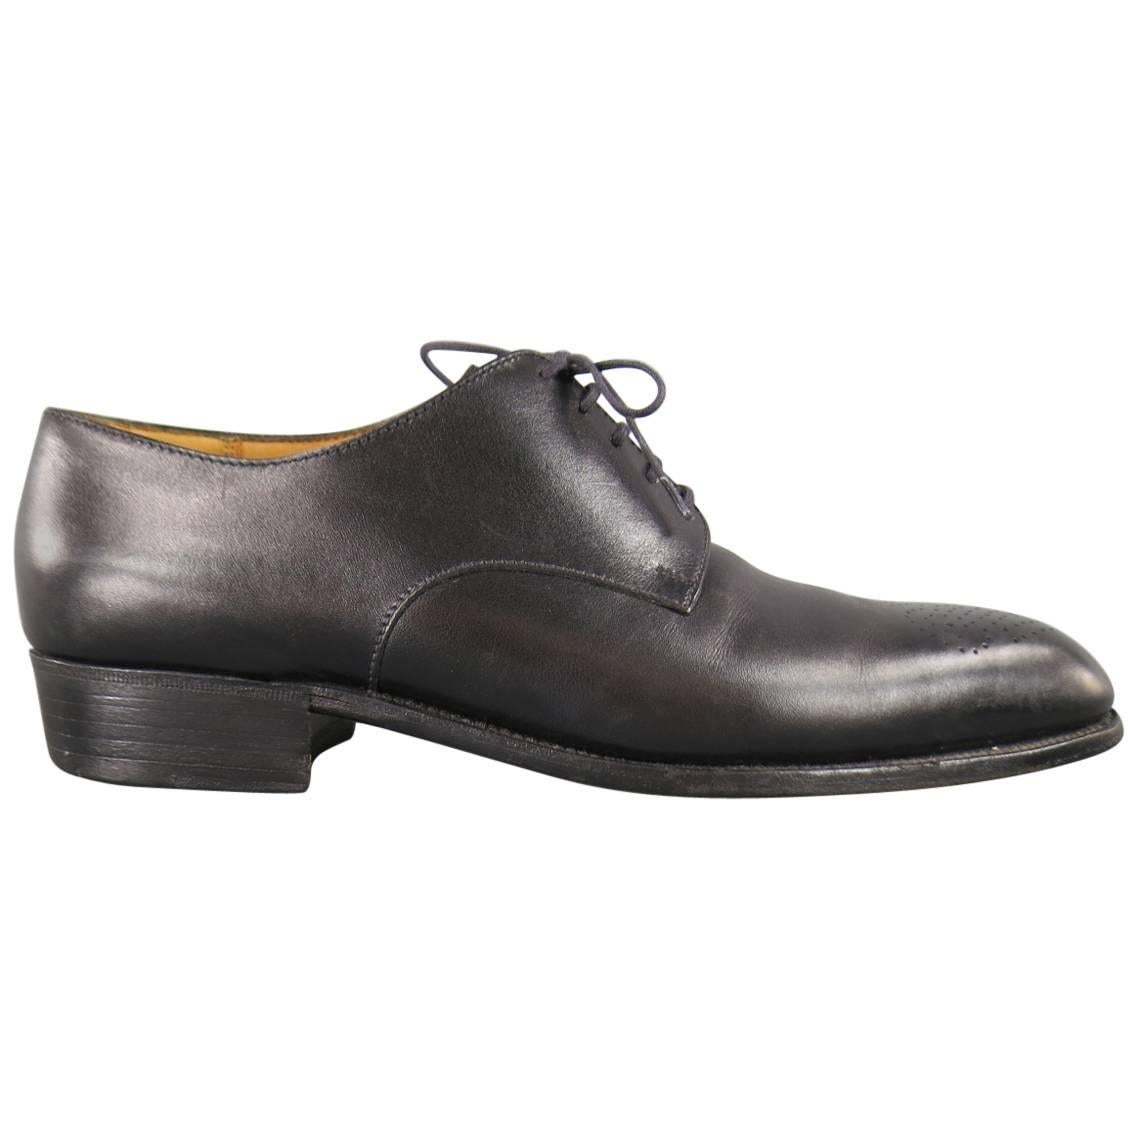 Men's J.M. WESTON Dress Shoe -  Size 7 Black Leather Wingtip Lace Up Shoes